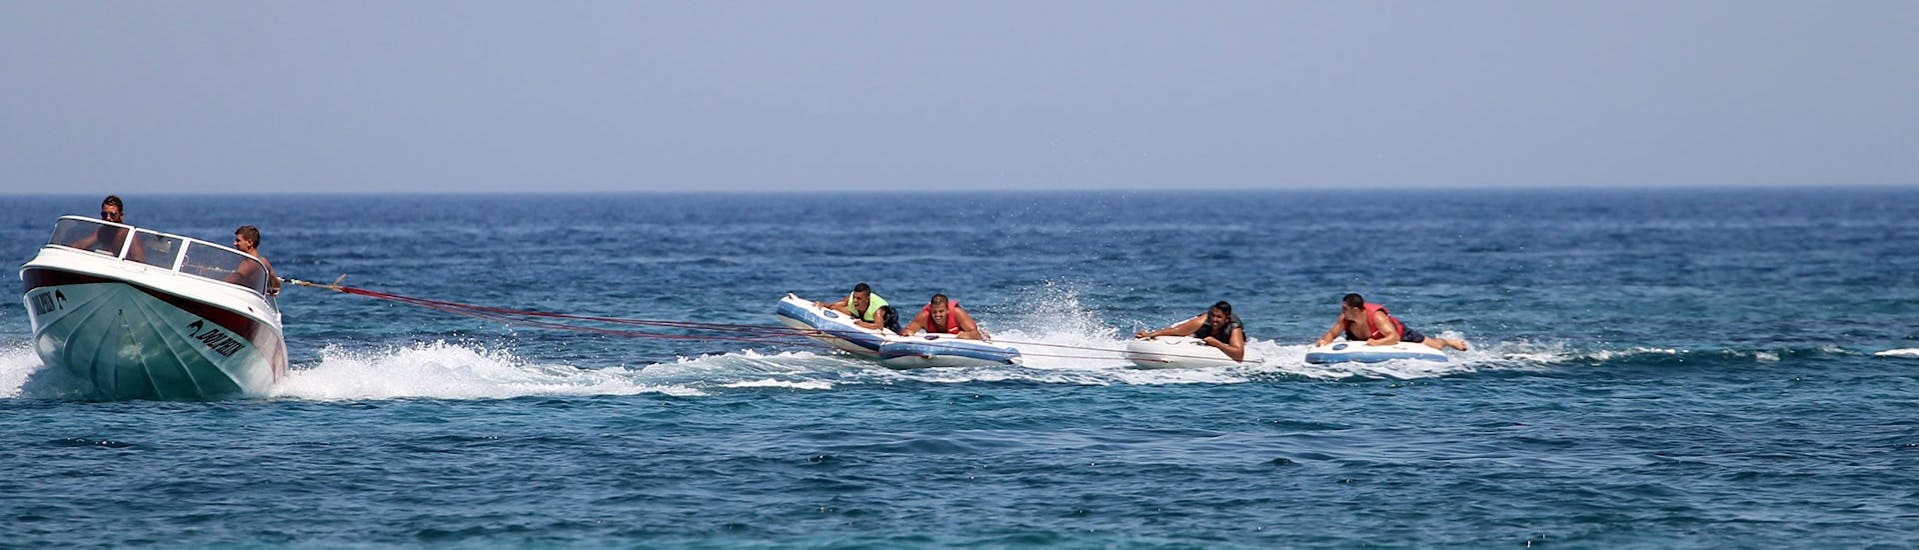 Die Leute auf den Gleitern kämpfen während der Bananenboot-Aktivität und weiteren Spaßbooten am Strand von Malia mit Dolphin Water Sports.